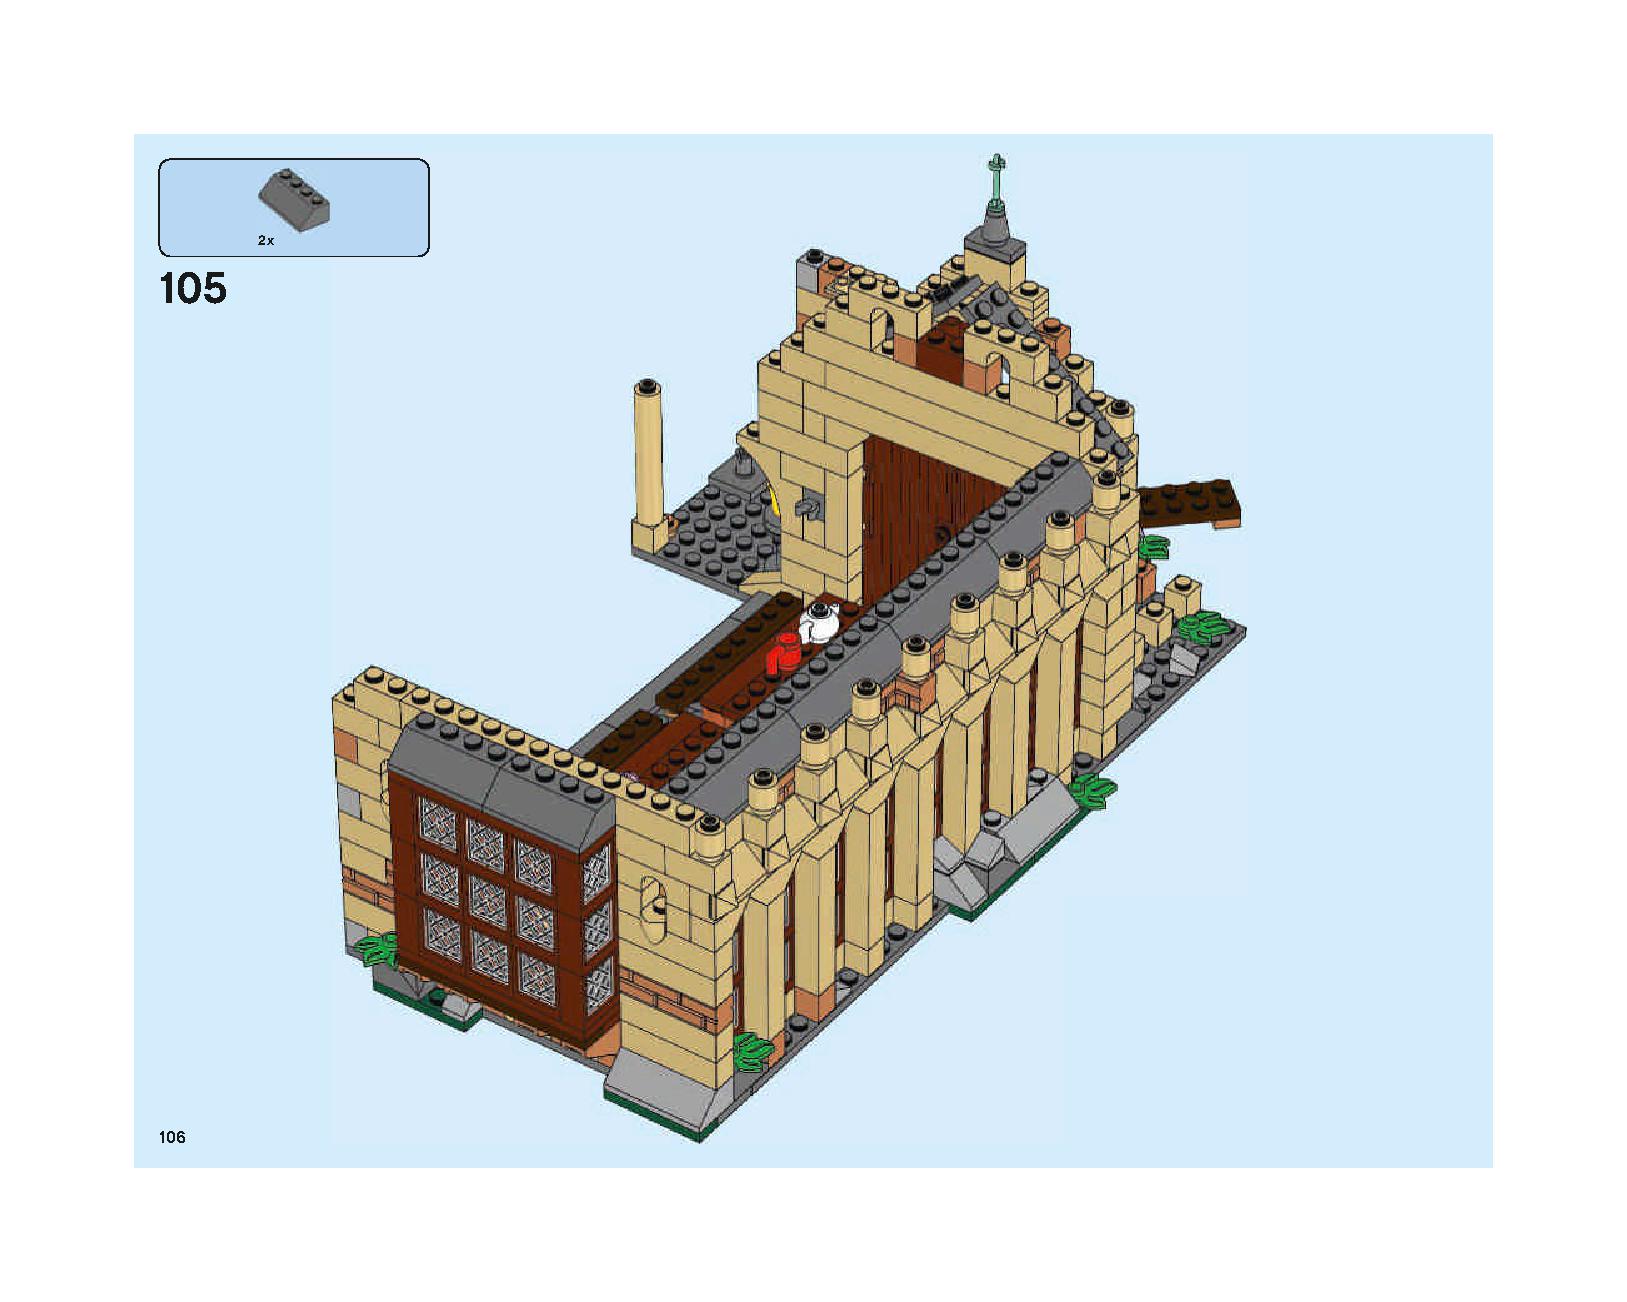 ホグワーツの大広間 75954 レゴの商品情報 レゴの説明書・組立方法 106 page